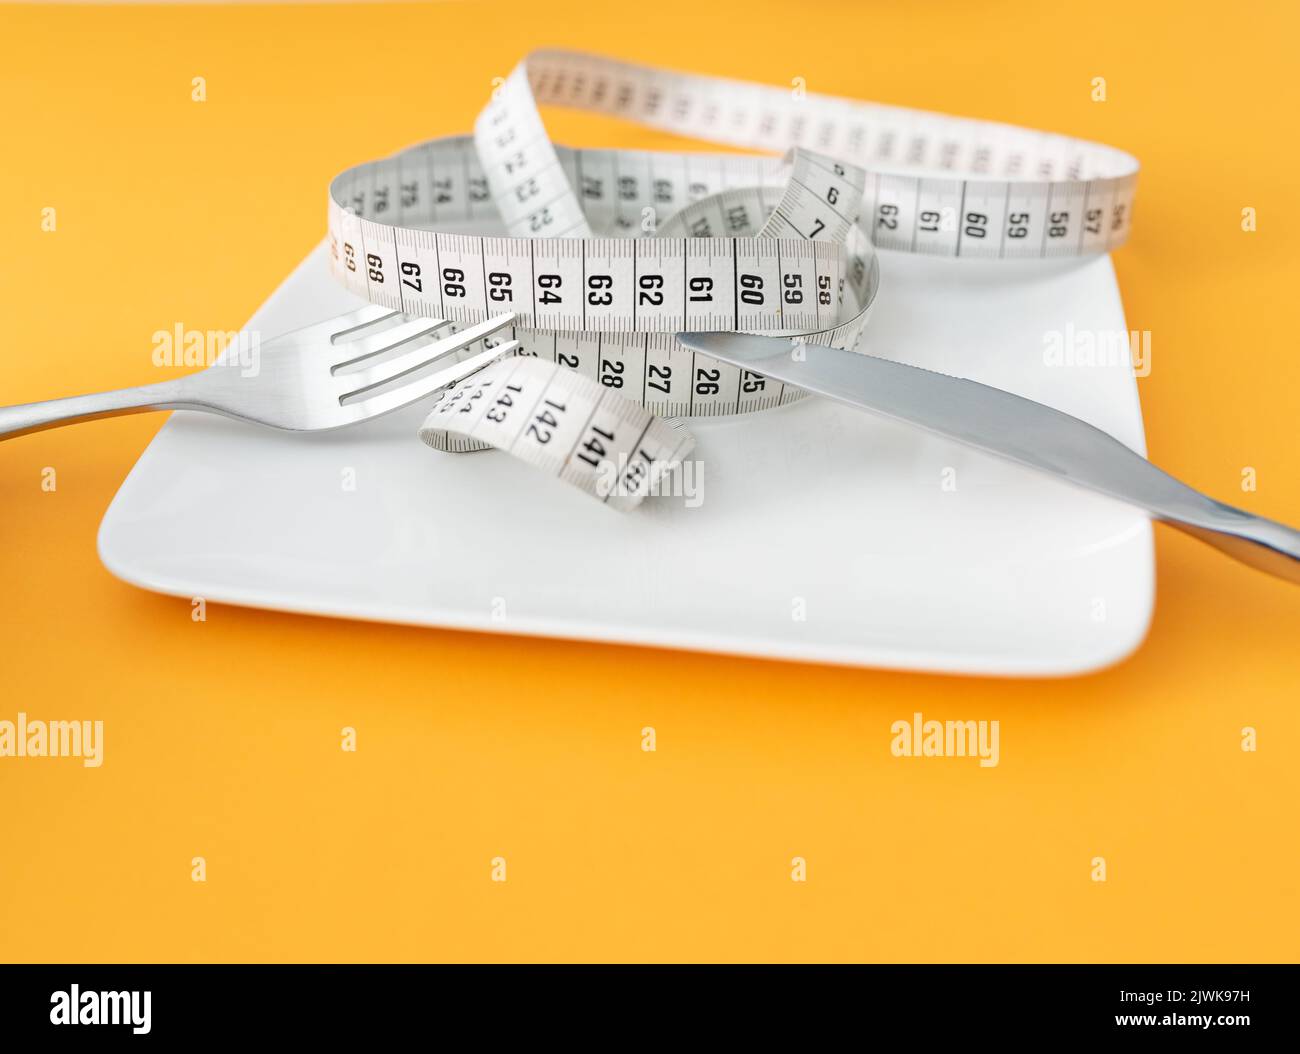 Maßband auf Platte mit Gabel und Messer auf orangenen Tischhintergrund mit Kopierraum, Diät und Gewichtsreduktion Konzept Stockfoto